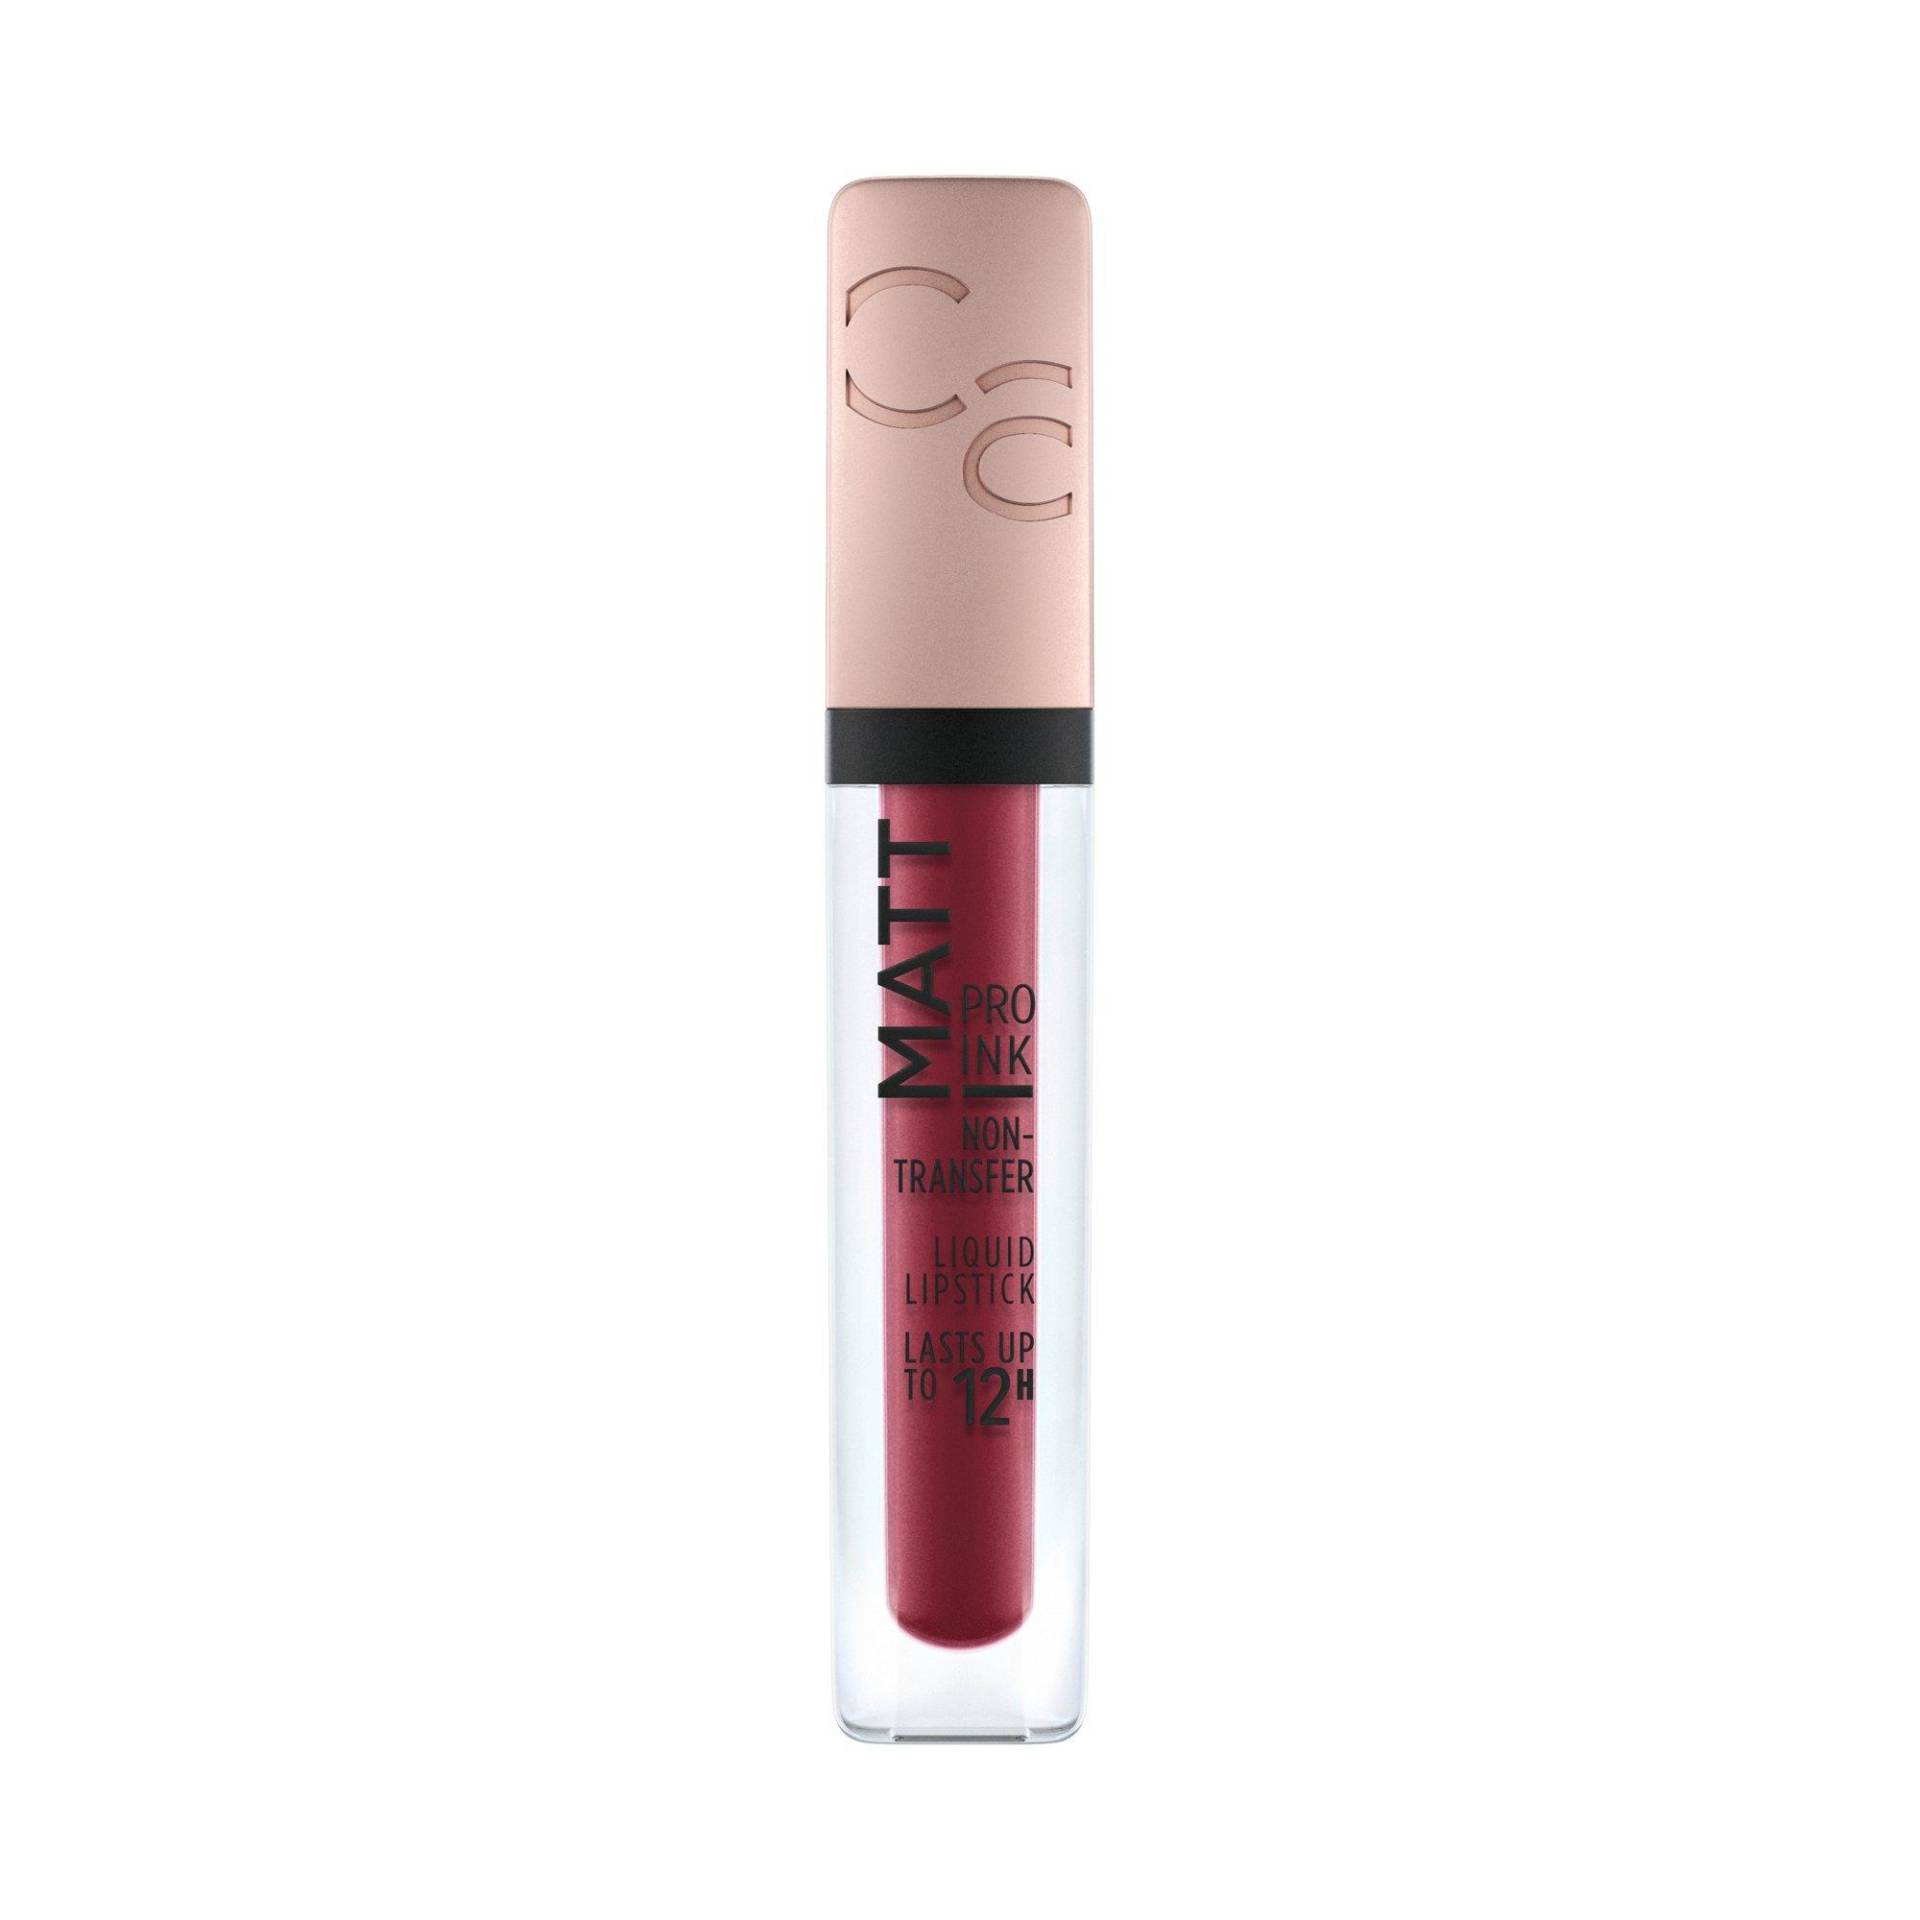 Matt Pro Ink Non-transfer Liquid Lipstick Damen Courage Code  5ml von CATRICE